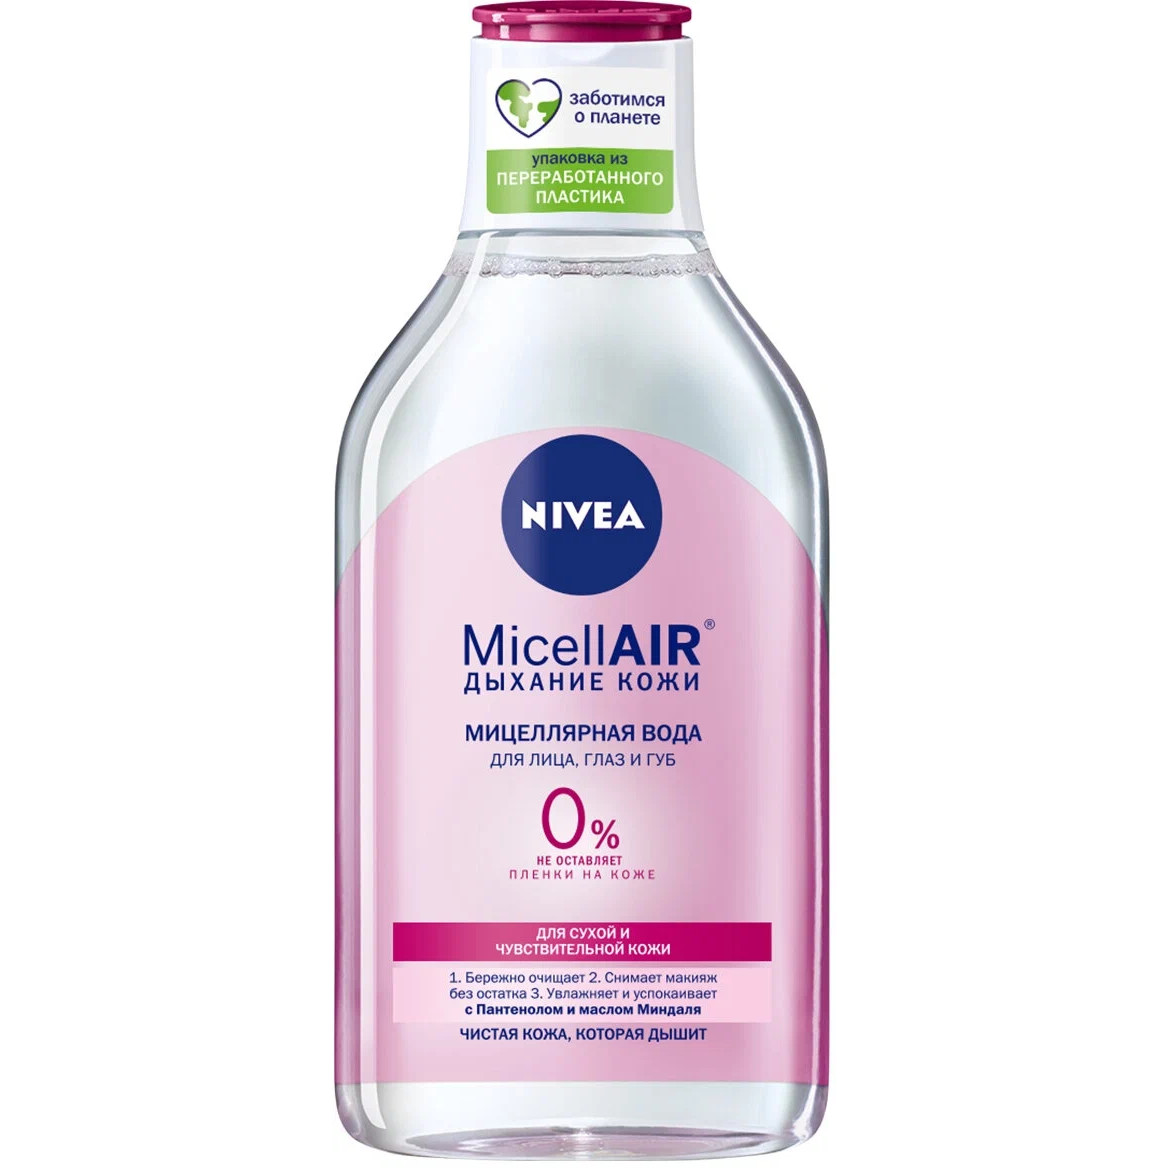 Мицеллярная вода для лица NIVEA 3-в-1 смягчающая, для сухой и чувствительной кожи, 400 мл nivea нежное средство для удаления макияжа с глаз